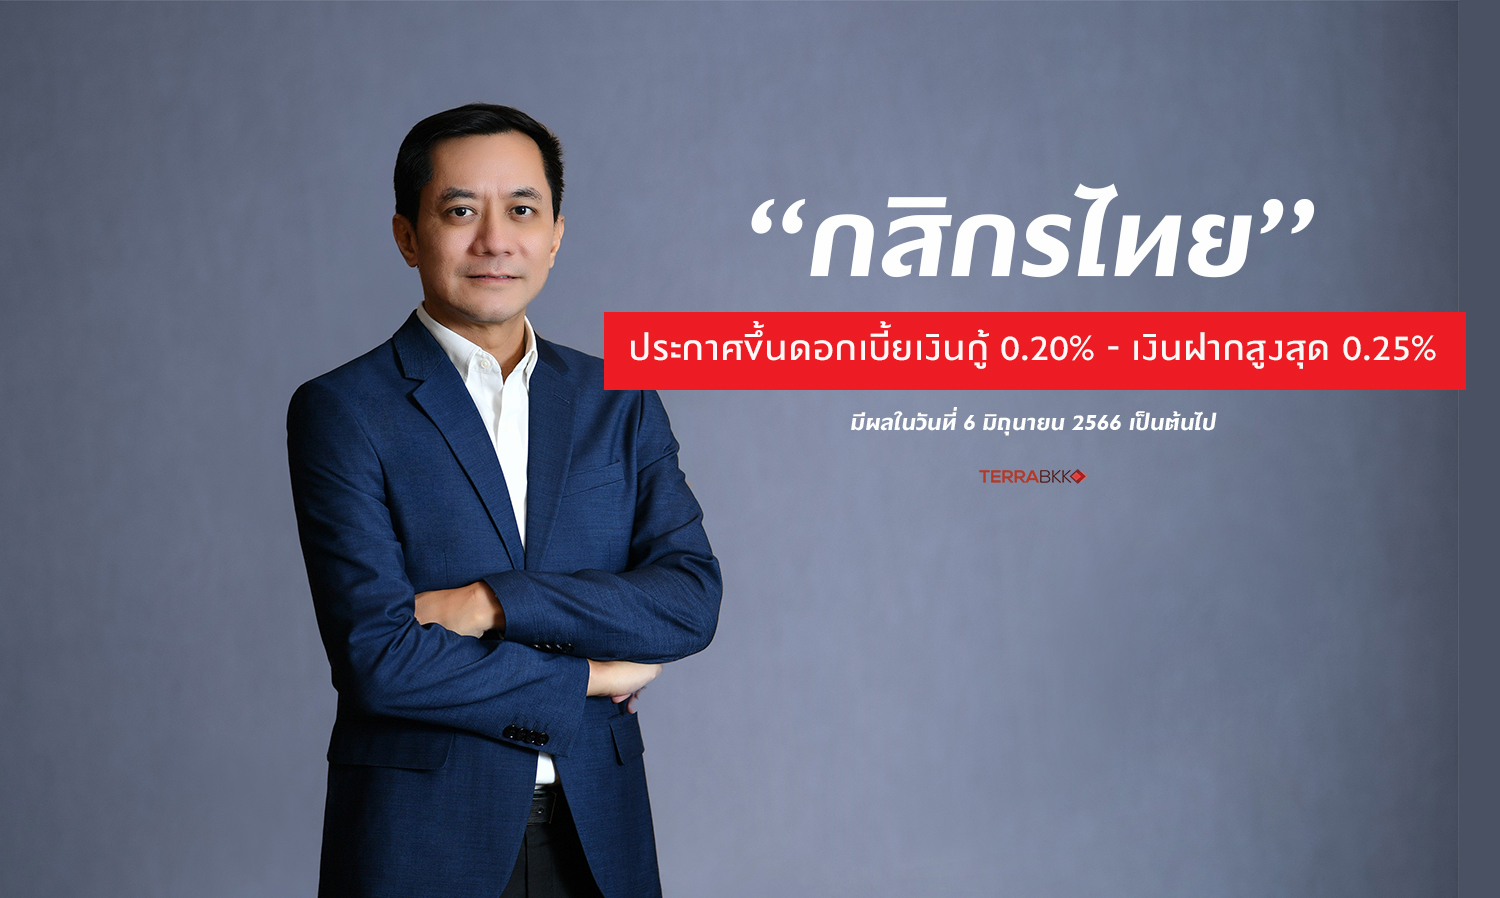 “กสิกรไทย” ประกาศขึ้นดอกเบี้ยเงินกู้ 0.20% - เงินฝากสูงสุด 0.25% 